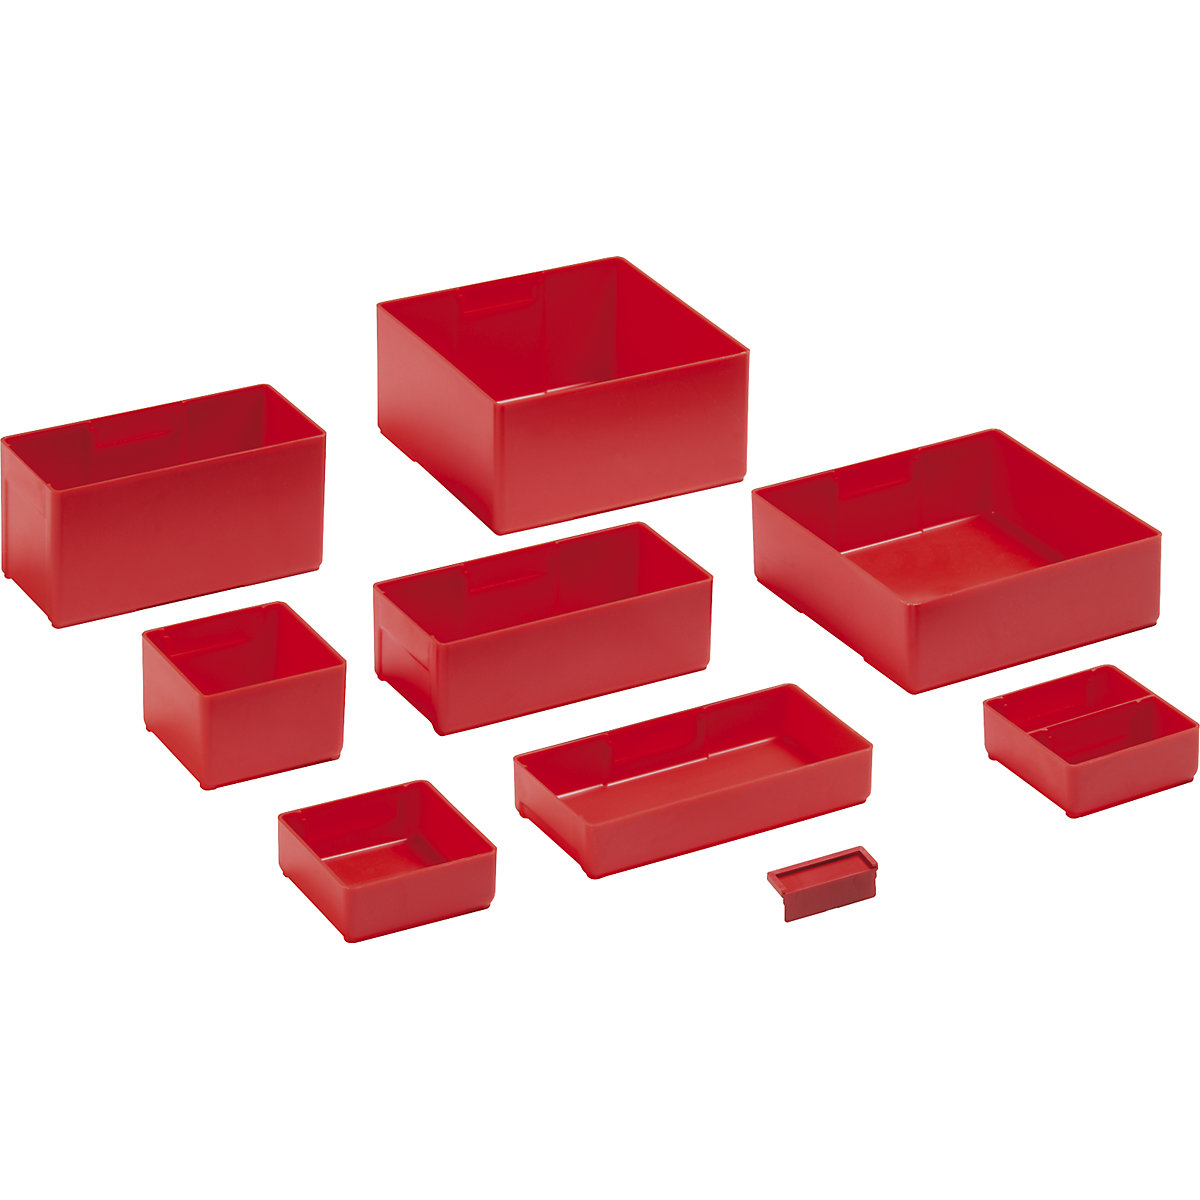 Compartimentation tiroirs – LISTA, godets de compartimentation, 75 x 75 mm, hauteur tiroirs 50 mm, lot de 12-2